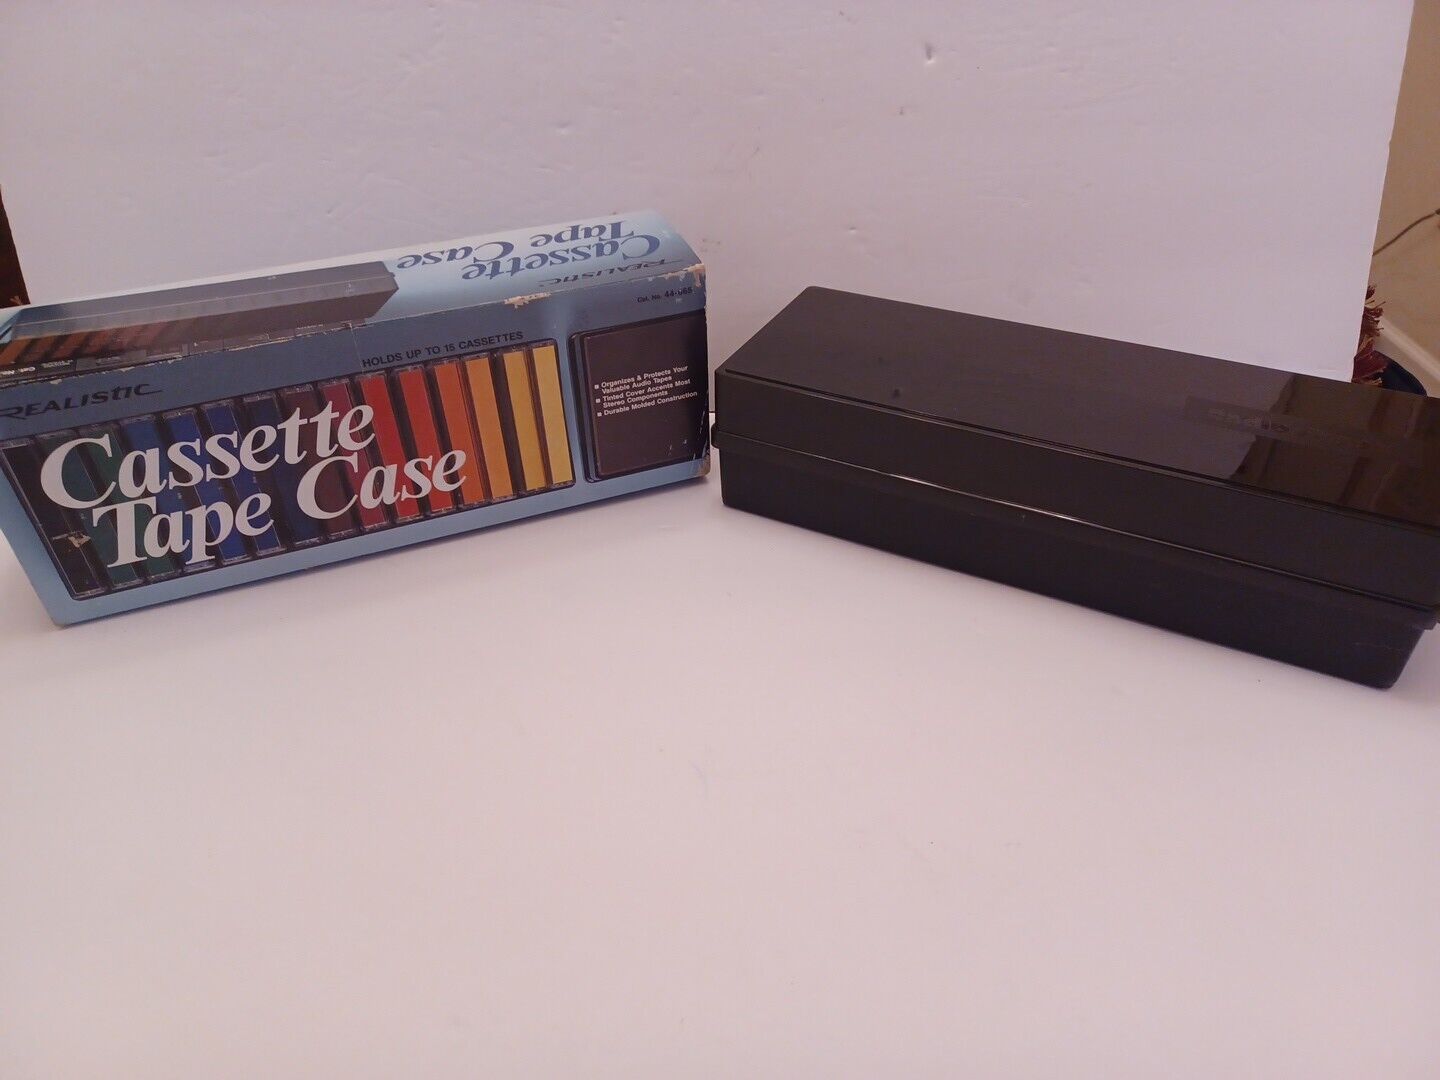 VTG REALISTIC RADIO SHACK Cassette Tape Case/Holder Storage for 15 #44-665